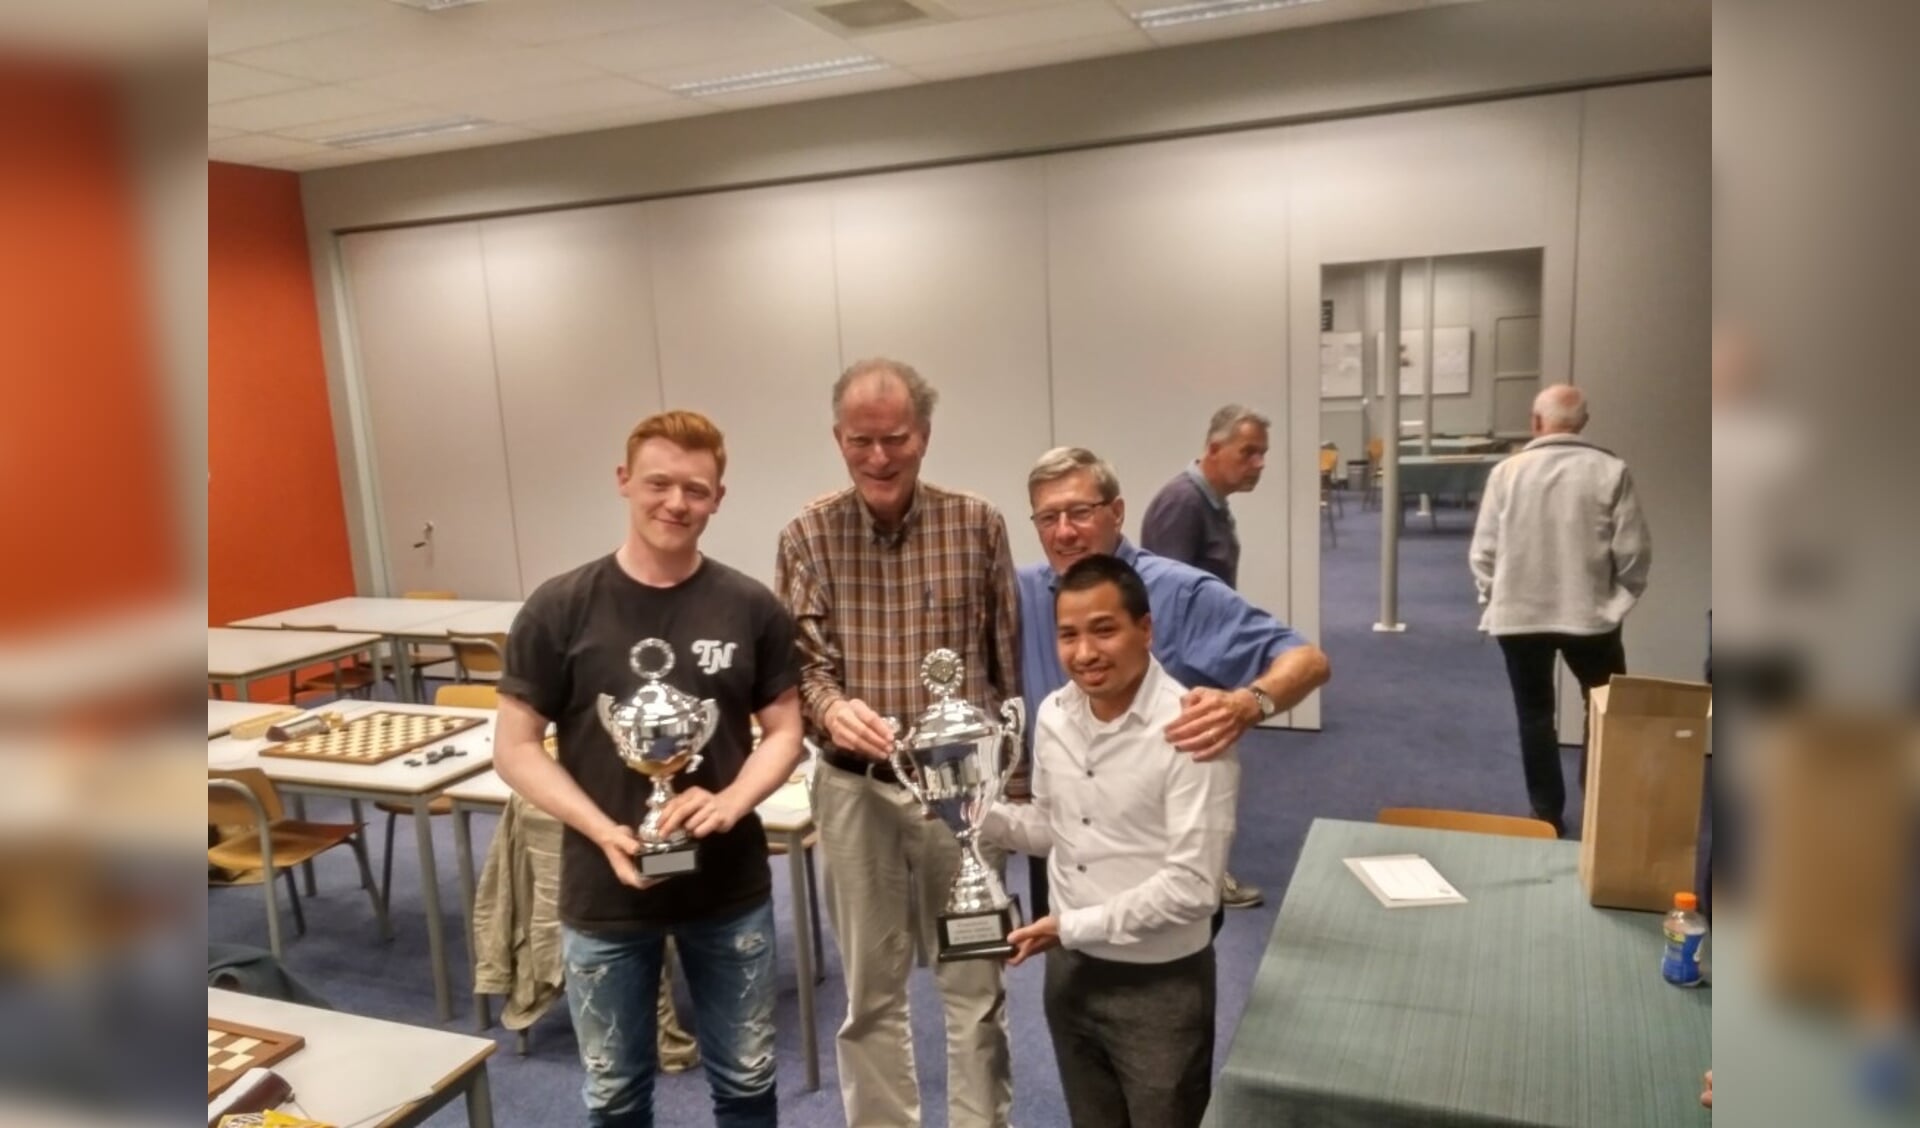 De dameltie van WSDV, met onder andere Jan Groenendijk (links) en Fred Ivens (boven rechts, op archieffoto na de bekerwinst in 2018) in de gelederen, behaalde bij Dammend Tilburg een klinkende 13-7 overwinning.